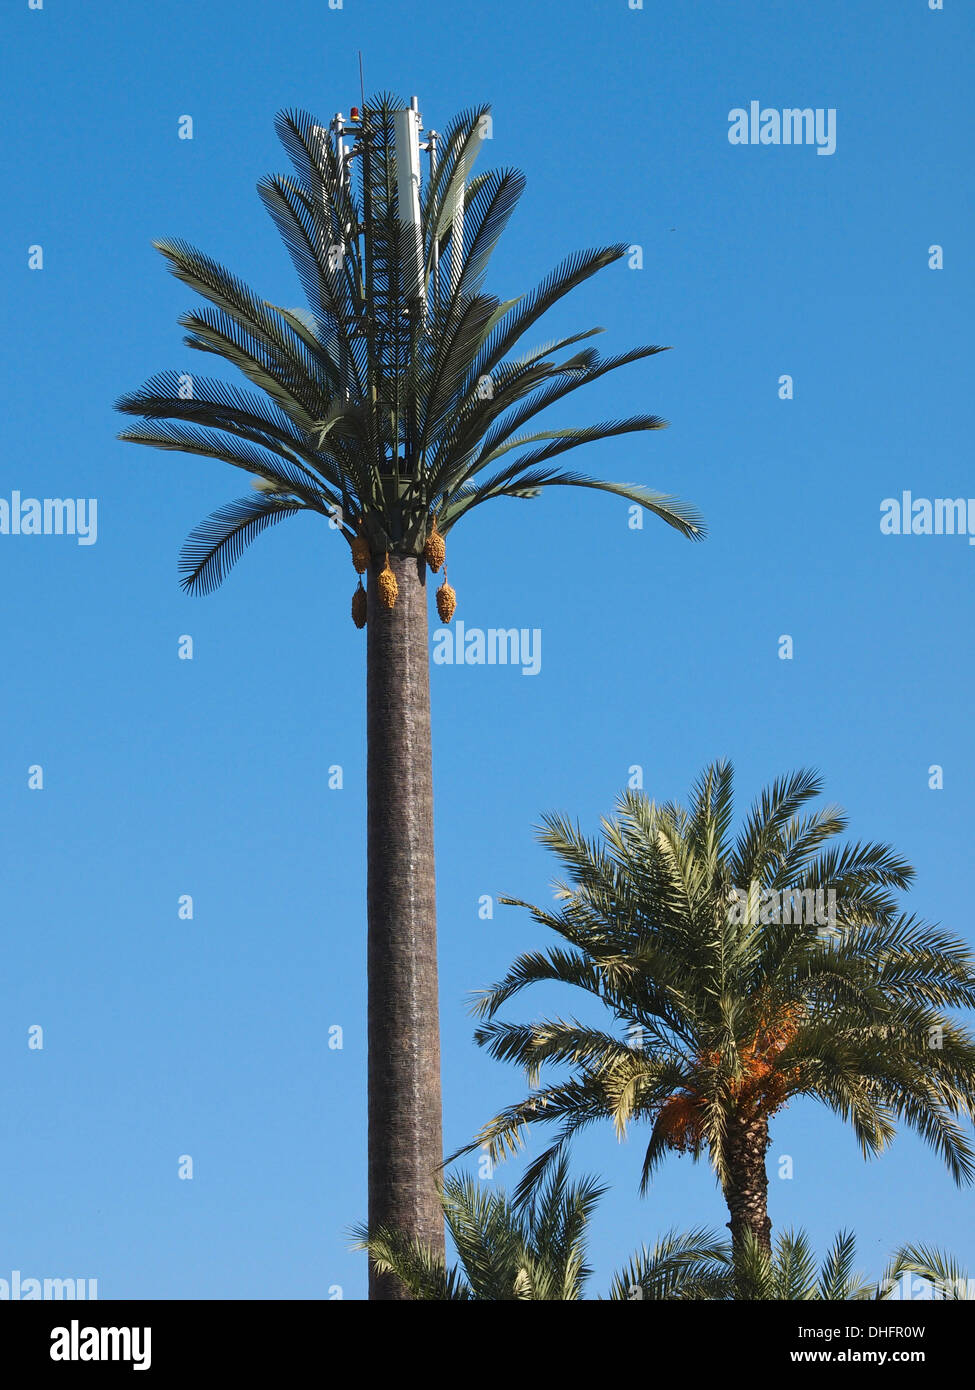 Palma artificiale immagini e fotografie stock ad alta risoluzione - Alamy